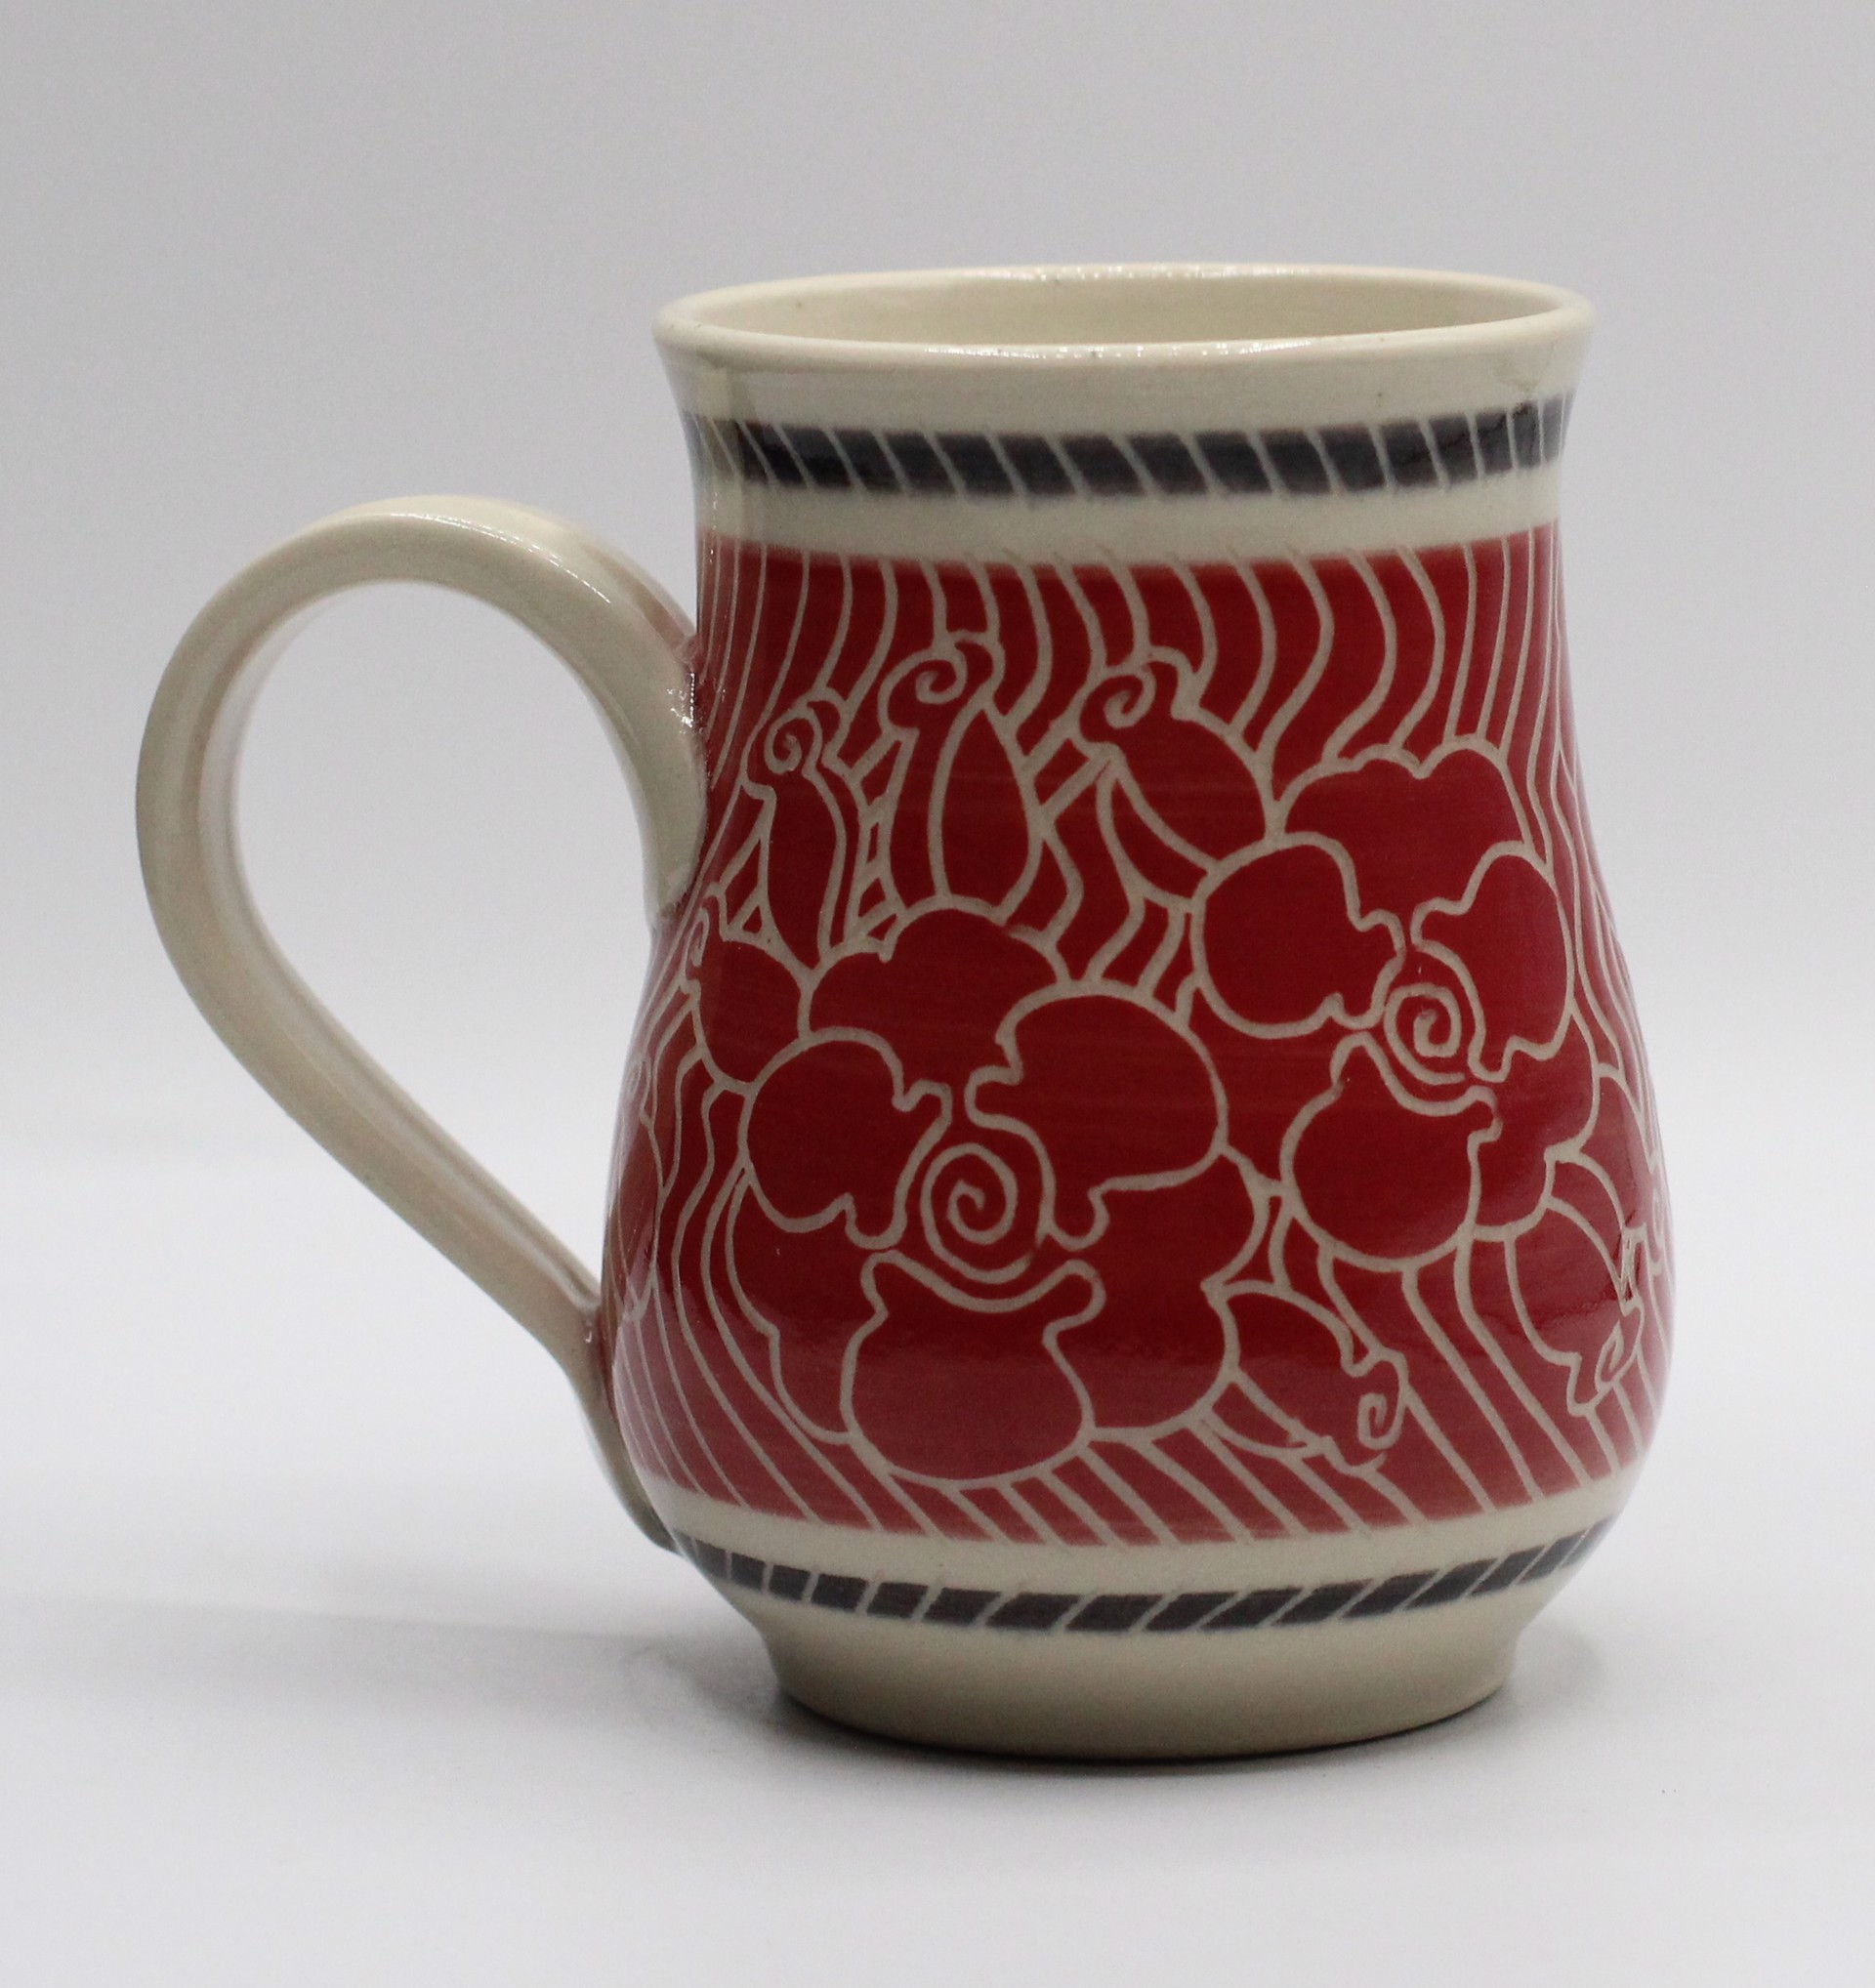 Red Rose Mug by Kelly Price